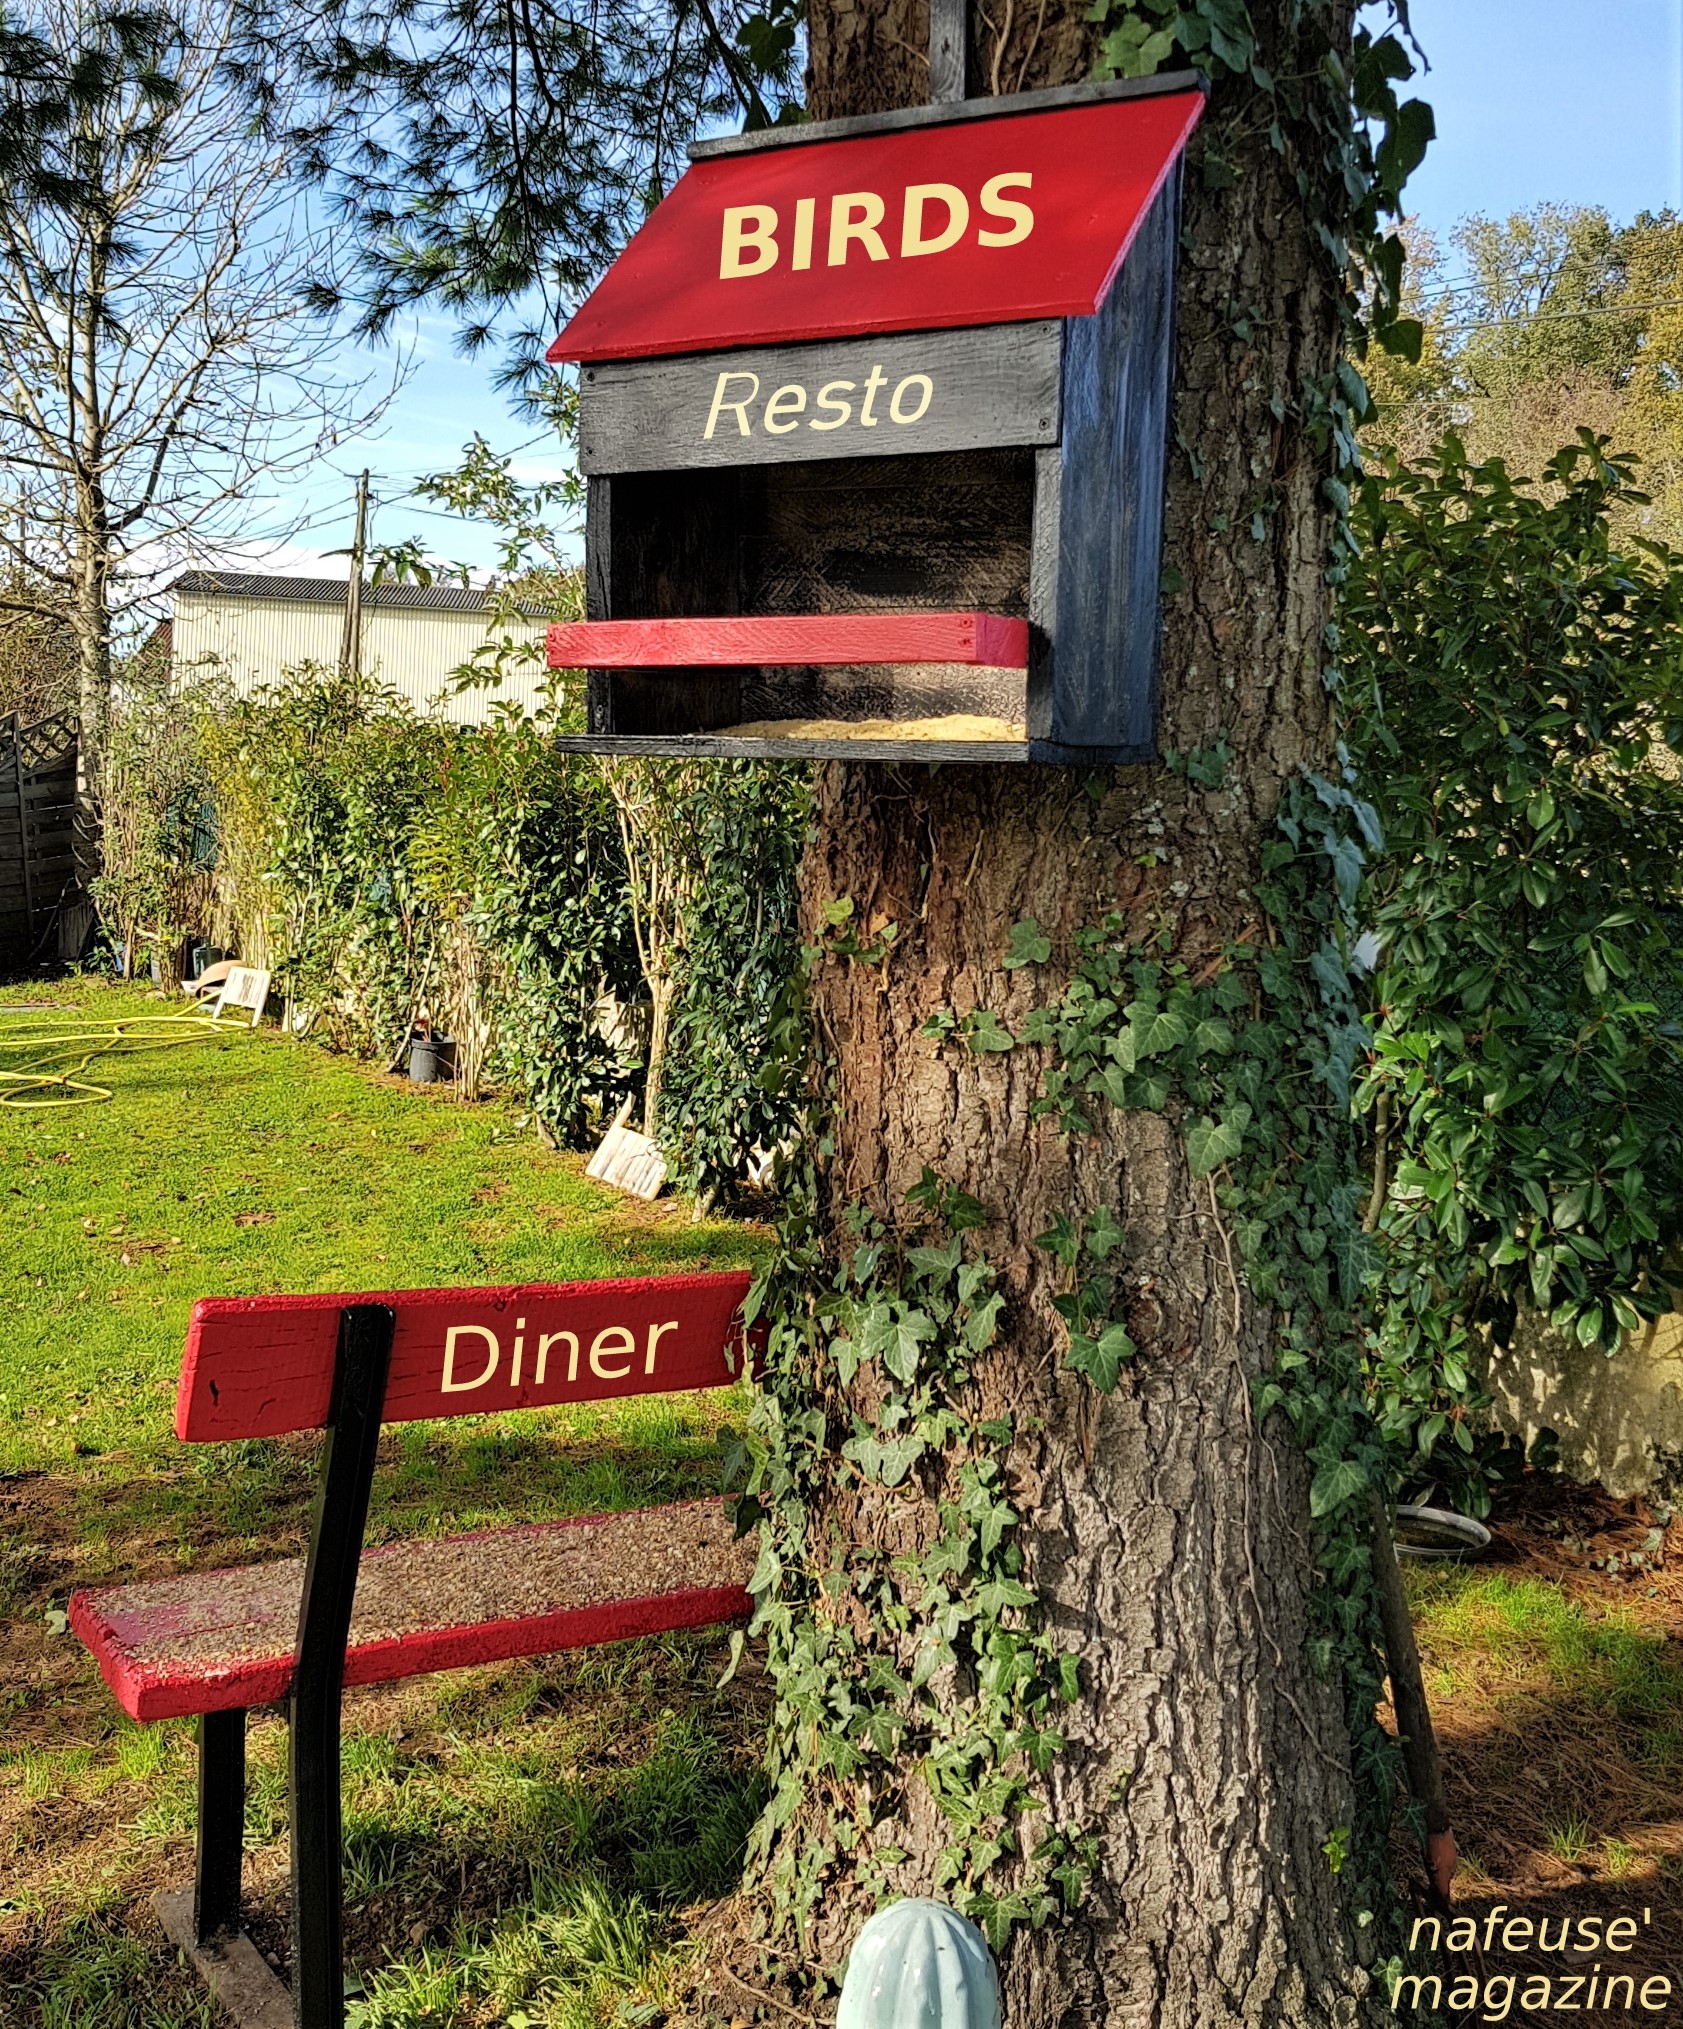 Mangeoire pour nourrir les oiseaux